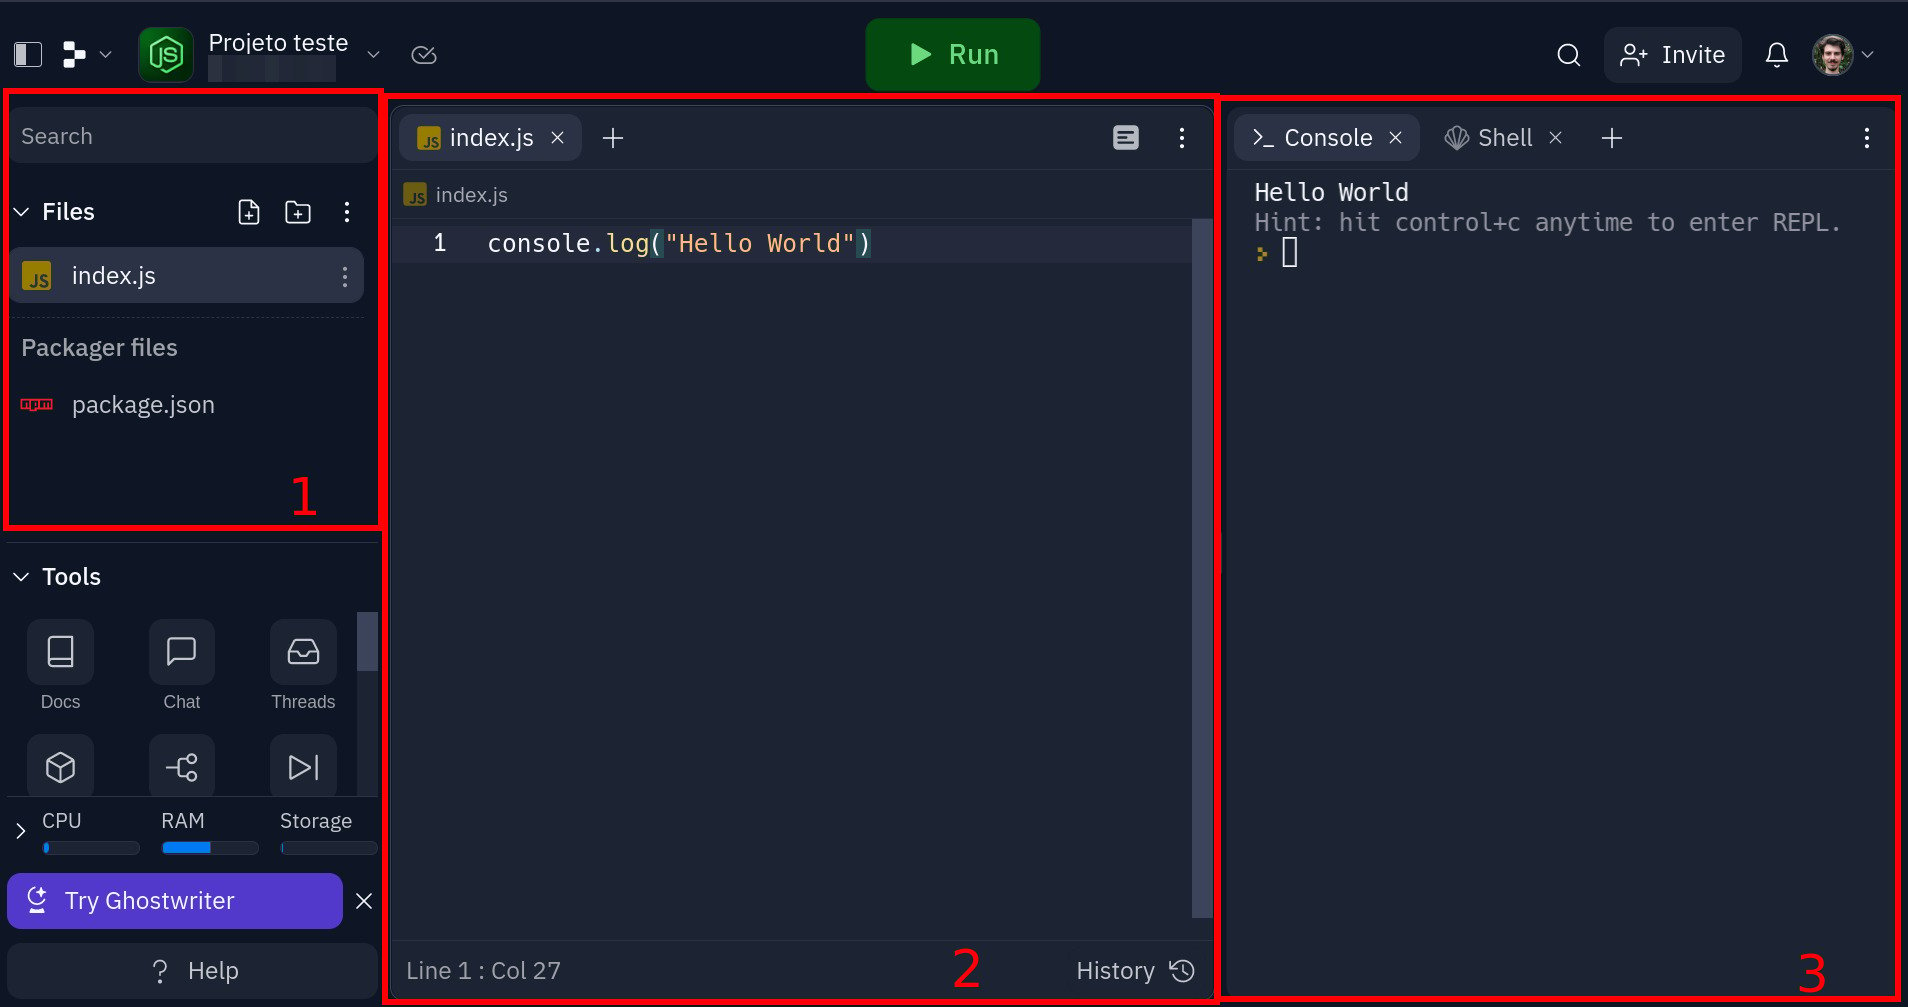 Imagem que mostra a interface de desenvolvimento de um projeto utilizando o Replit. A imagem está dividida em três partes, com  três destaques em vermelho, numerados de 1 a 3 e postos da esquerda para a direita. O primeiro destaque, à esquerda, denota a árvore de diretórios do projeto, o segundo destaque denota o arquivo no qual deve ser inserido o código e o terceiro denota o console no qual irá aparecer o resultado do código após executá-lo. Existe ainda uma linha de código que diz - console.log("Hello World") - no arquivo de escrita de código e uma resposta no console que diz - Hello World.